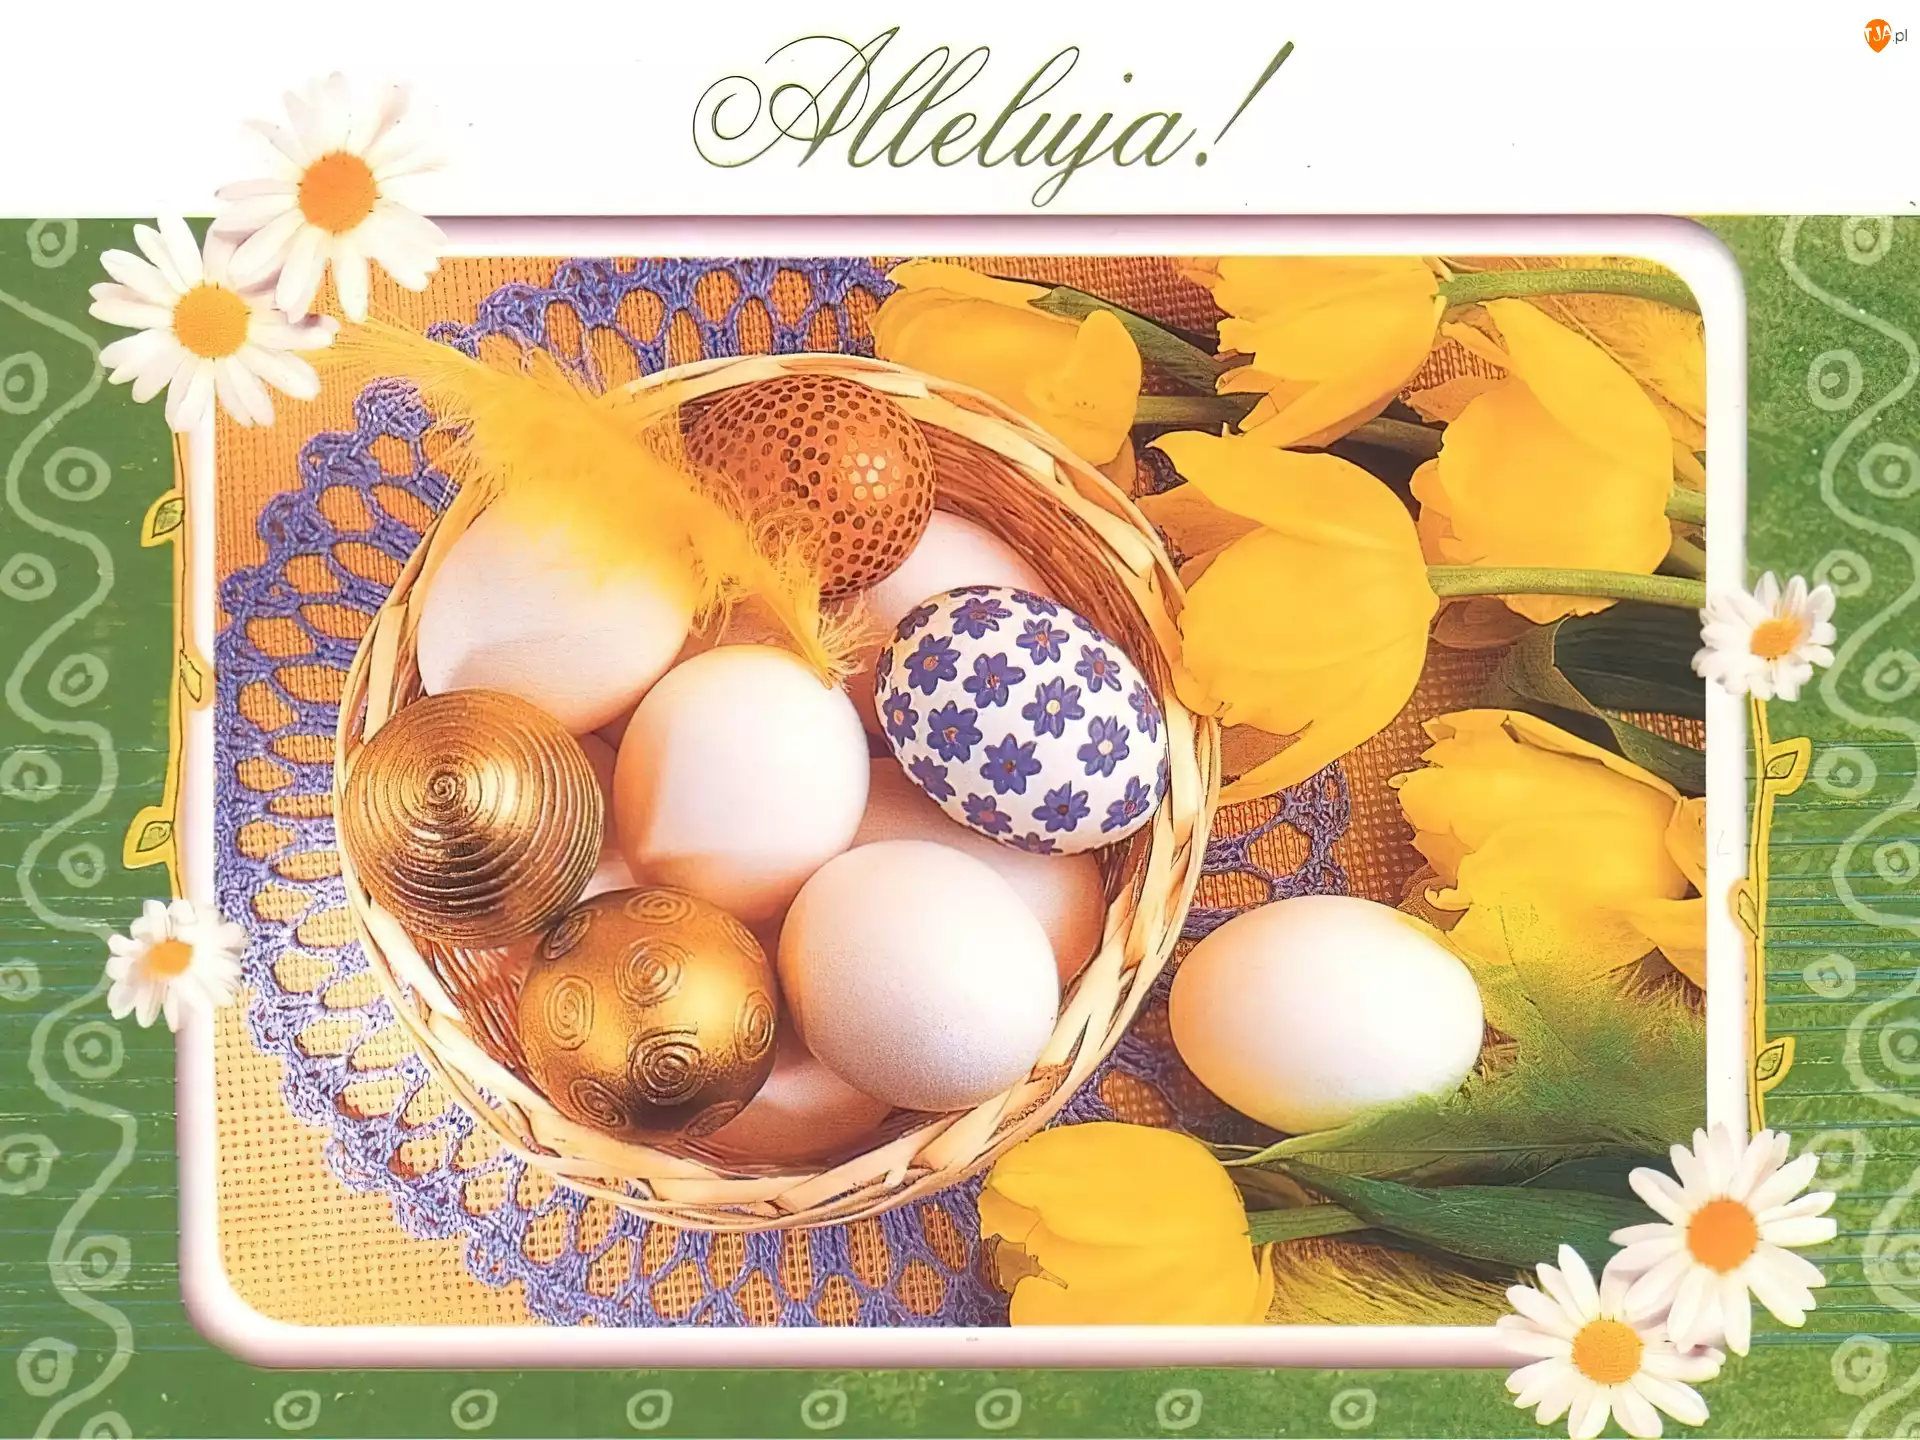 jajeczka, Wielkanoc, alleluja